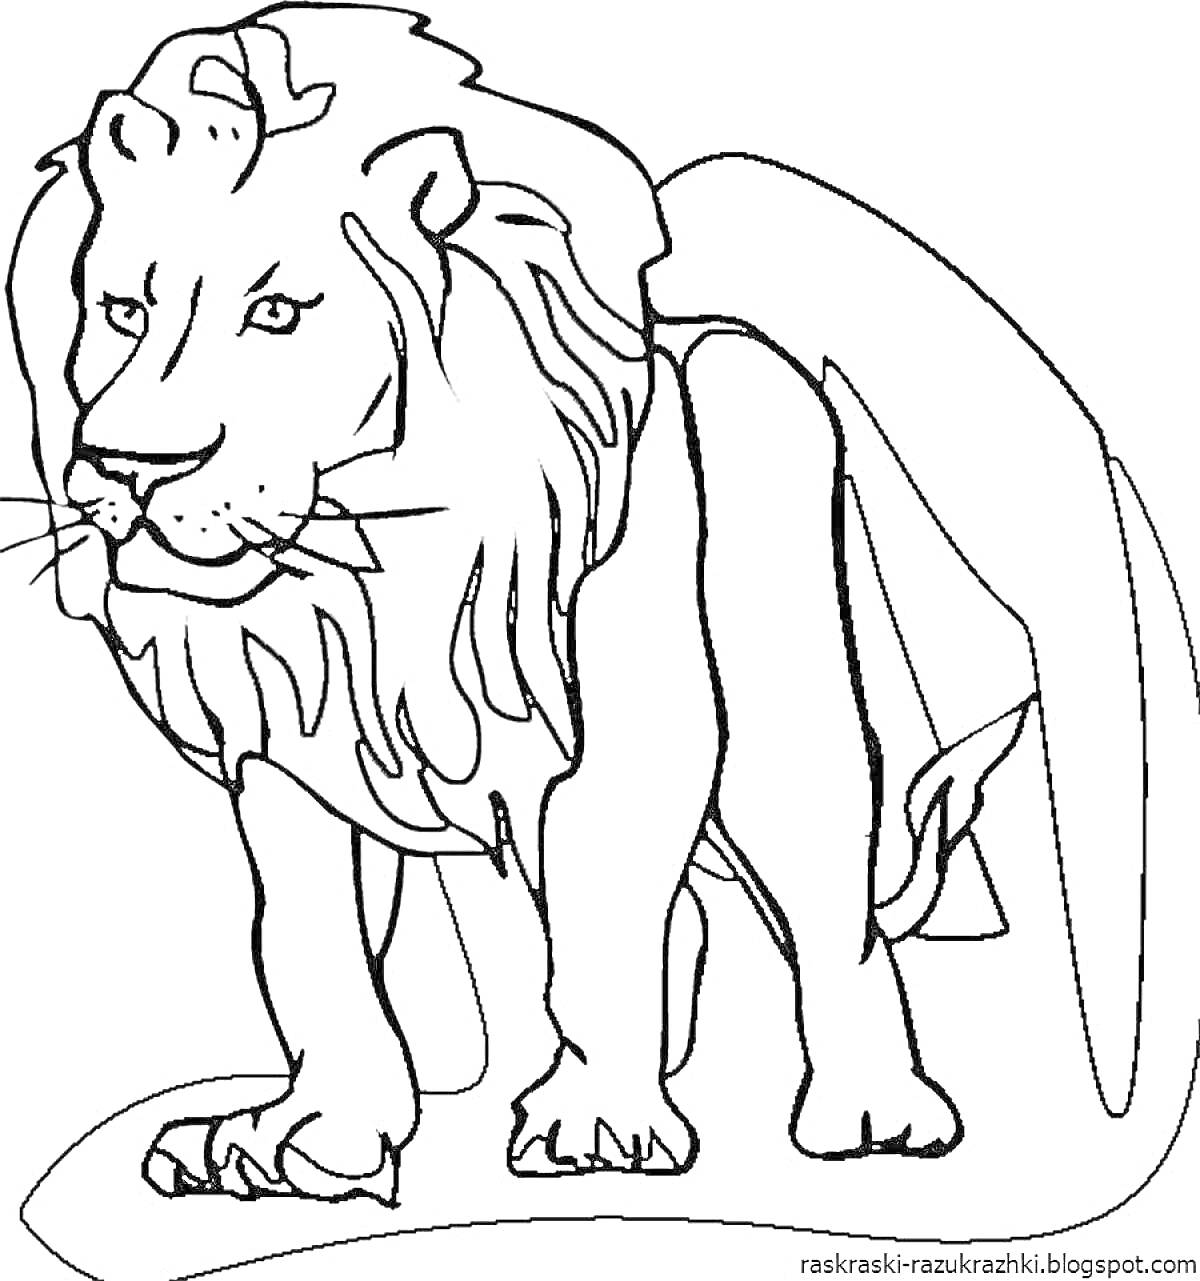 Лев, стоящий на земле со свисающей гривой